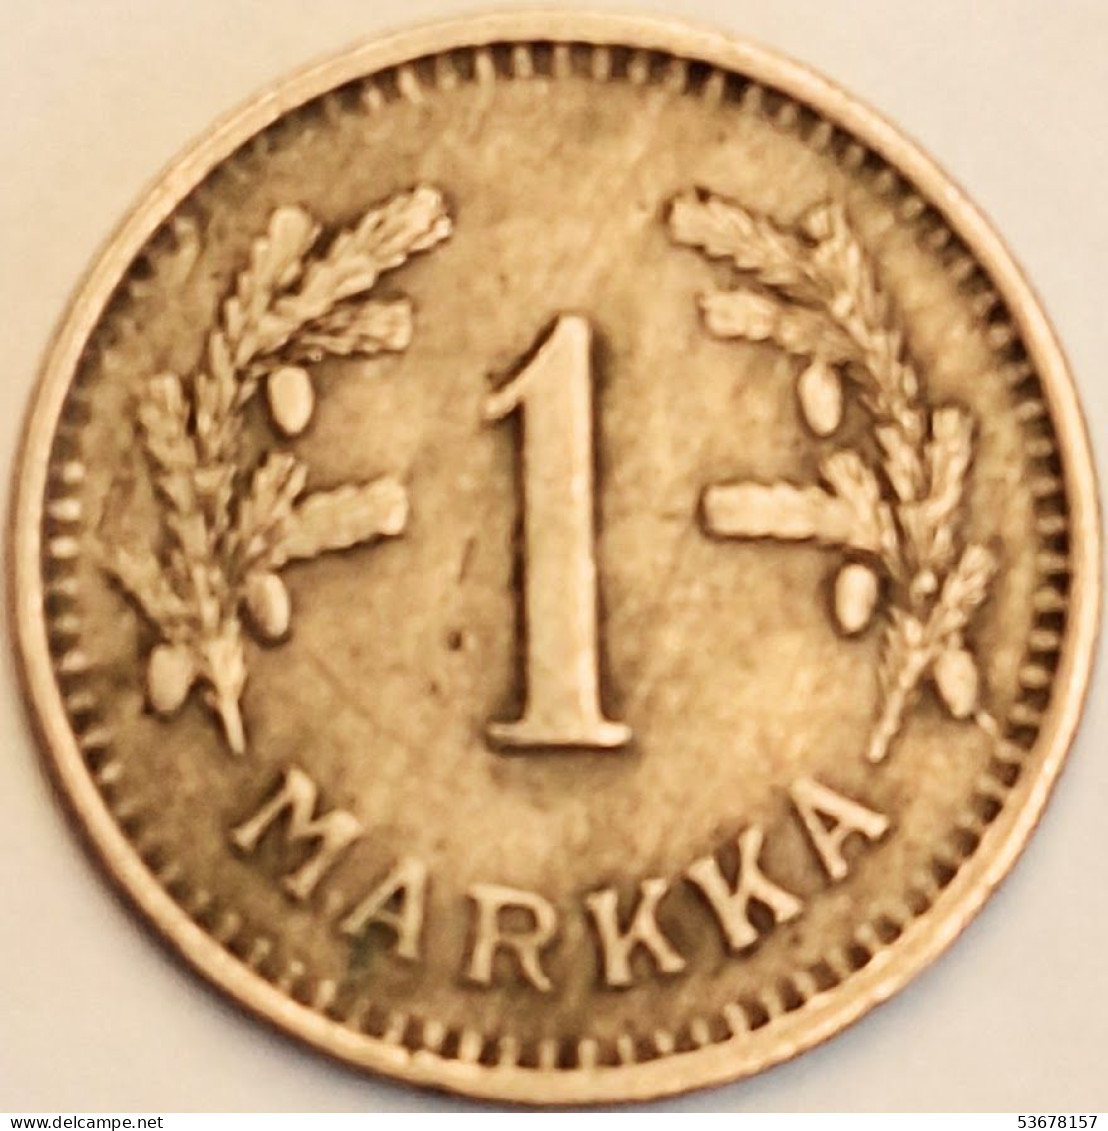 Finland - Markka 1930 S, KM# 30 (#3889) - Finland